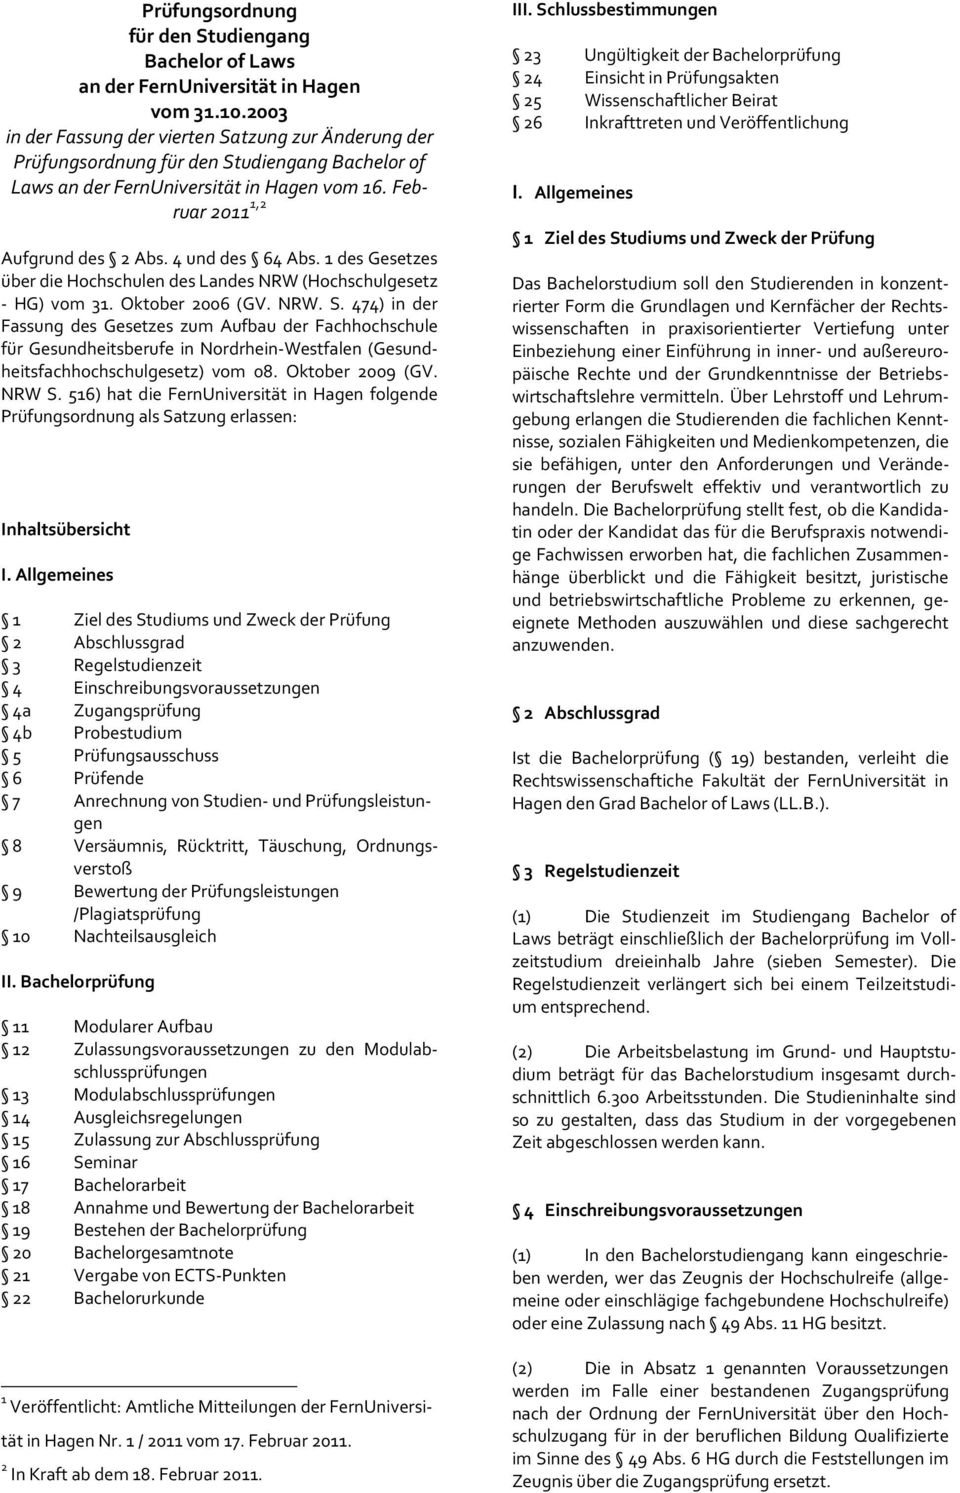 4 und des 64 Abs. 1 des Gesetzes über die Hochschulen des Landes NRW (Hochschulgesetz - HG) vom 31. Oktober 2006 (GV. NRW. S.